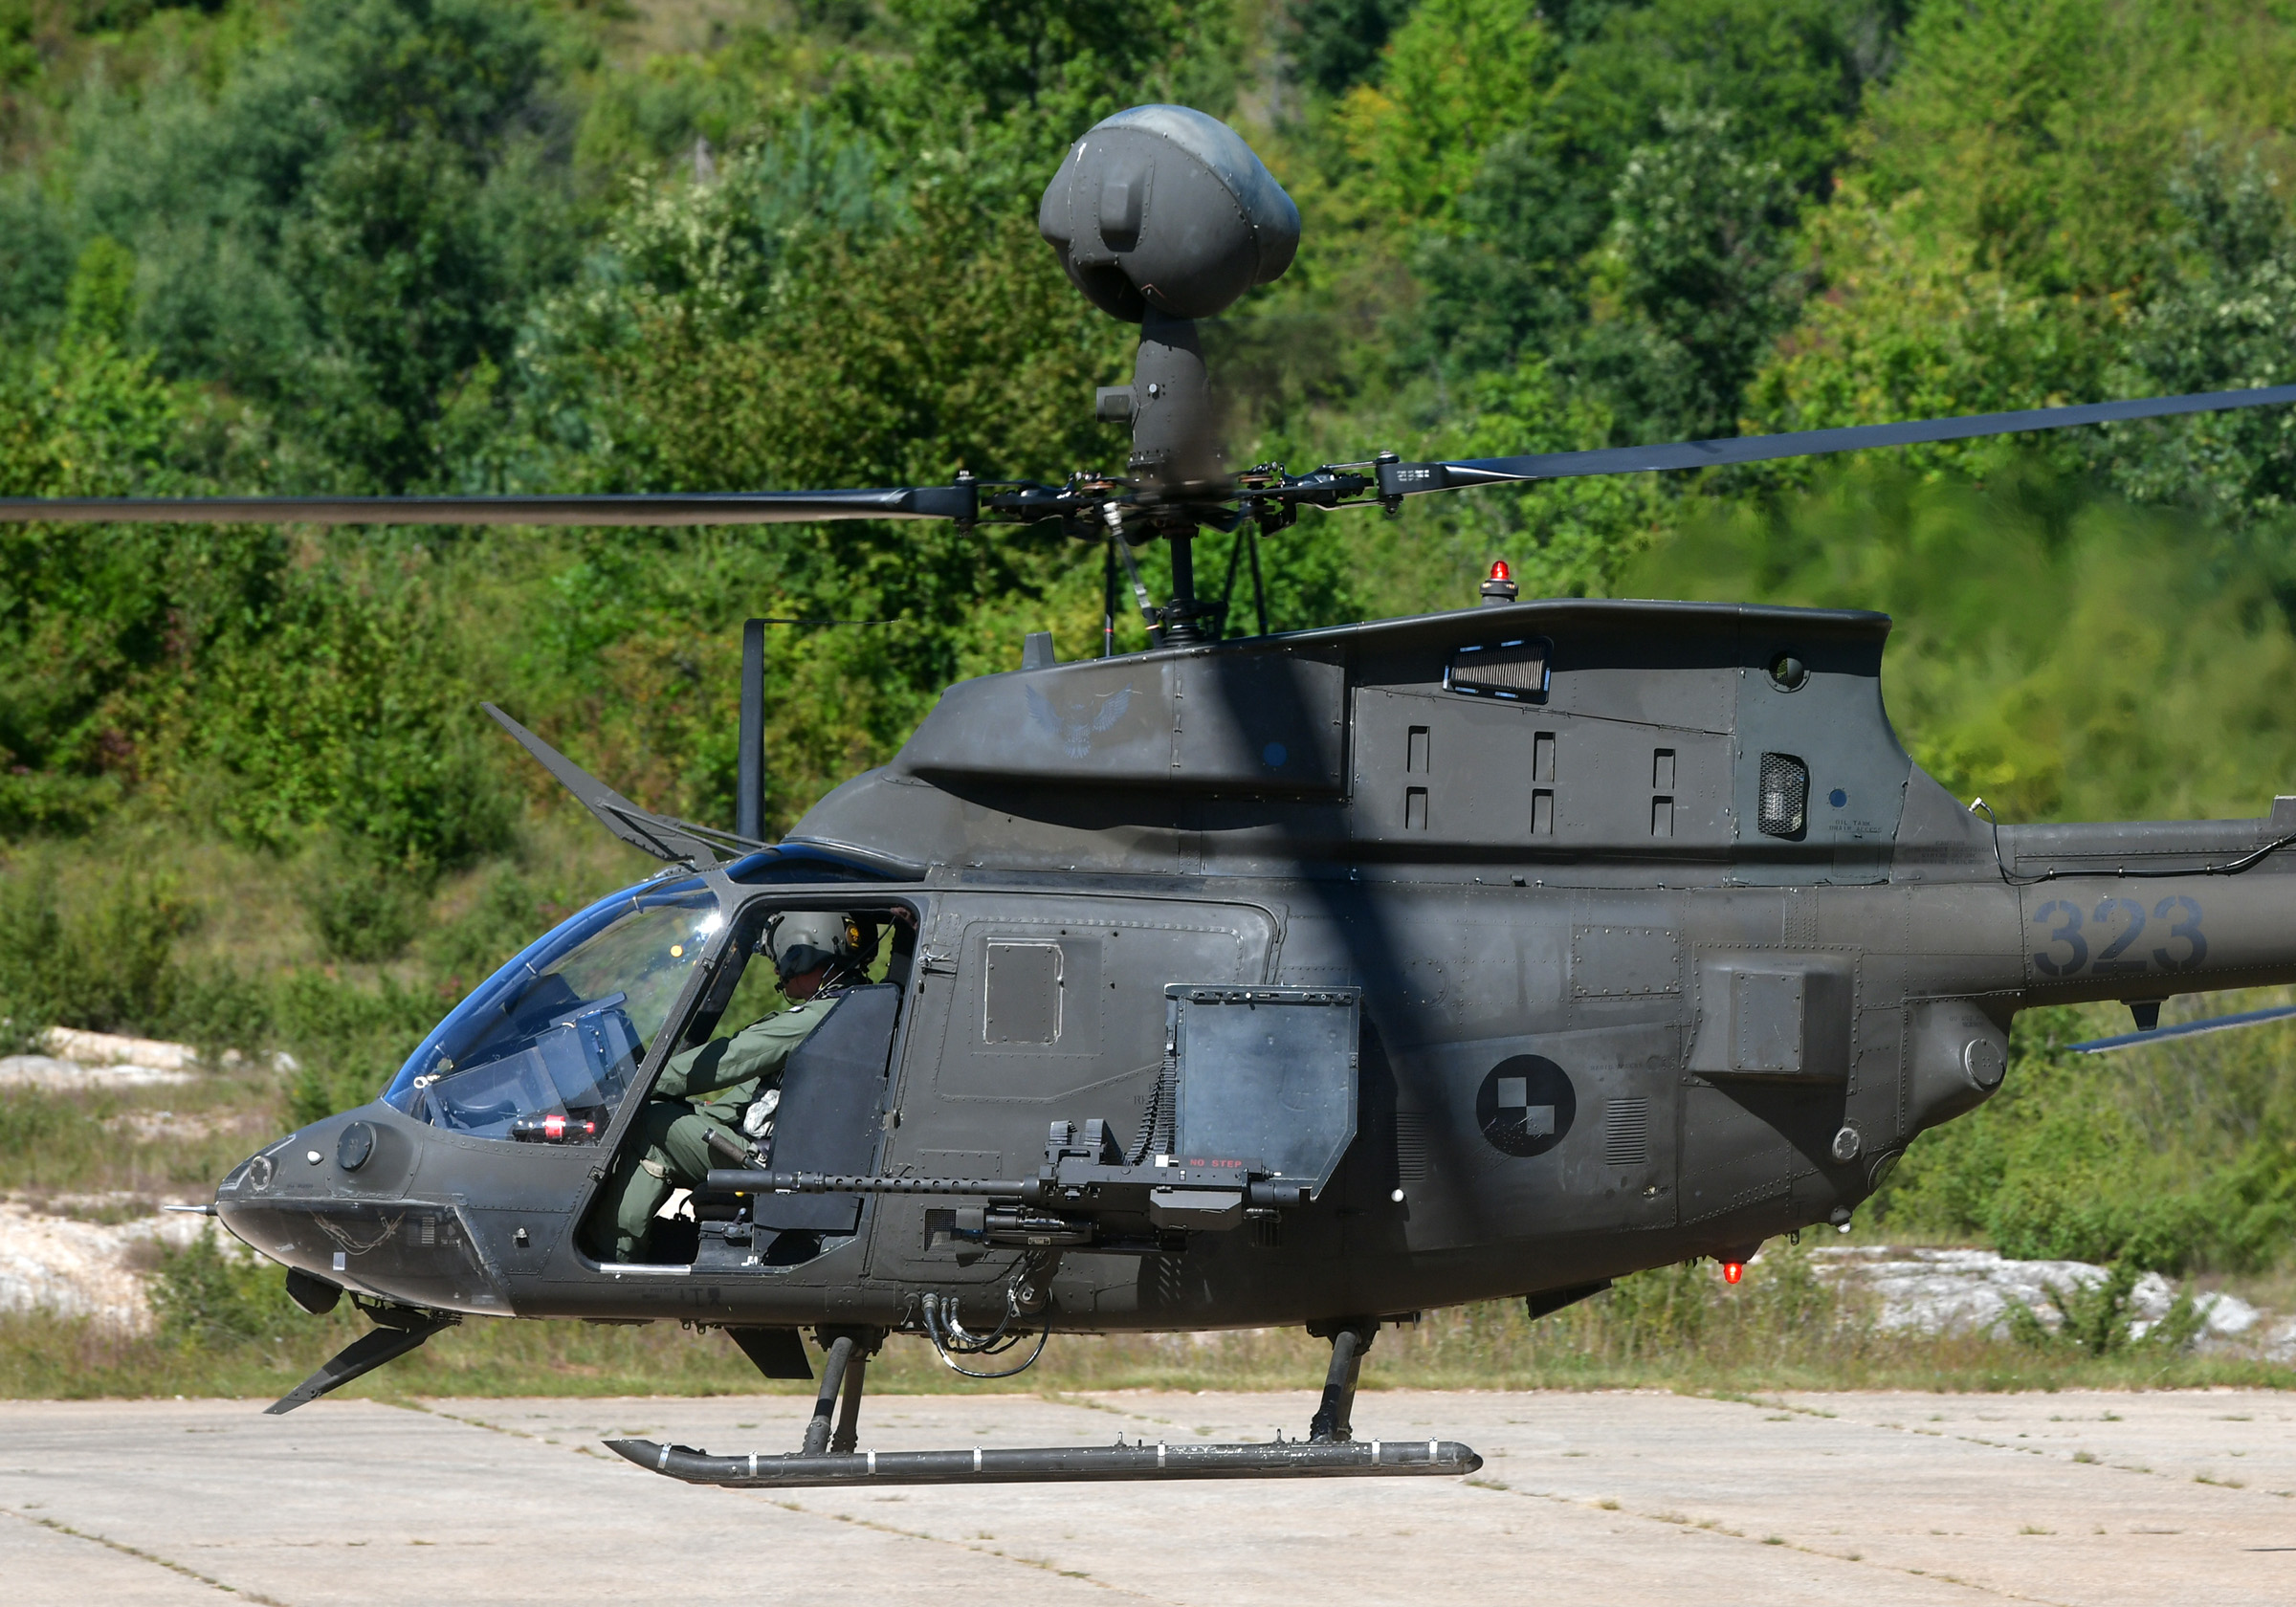 Provedena bojna gađanja i raketiranja iz helikoptera Kiowa Warrior